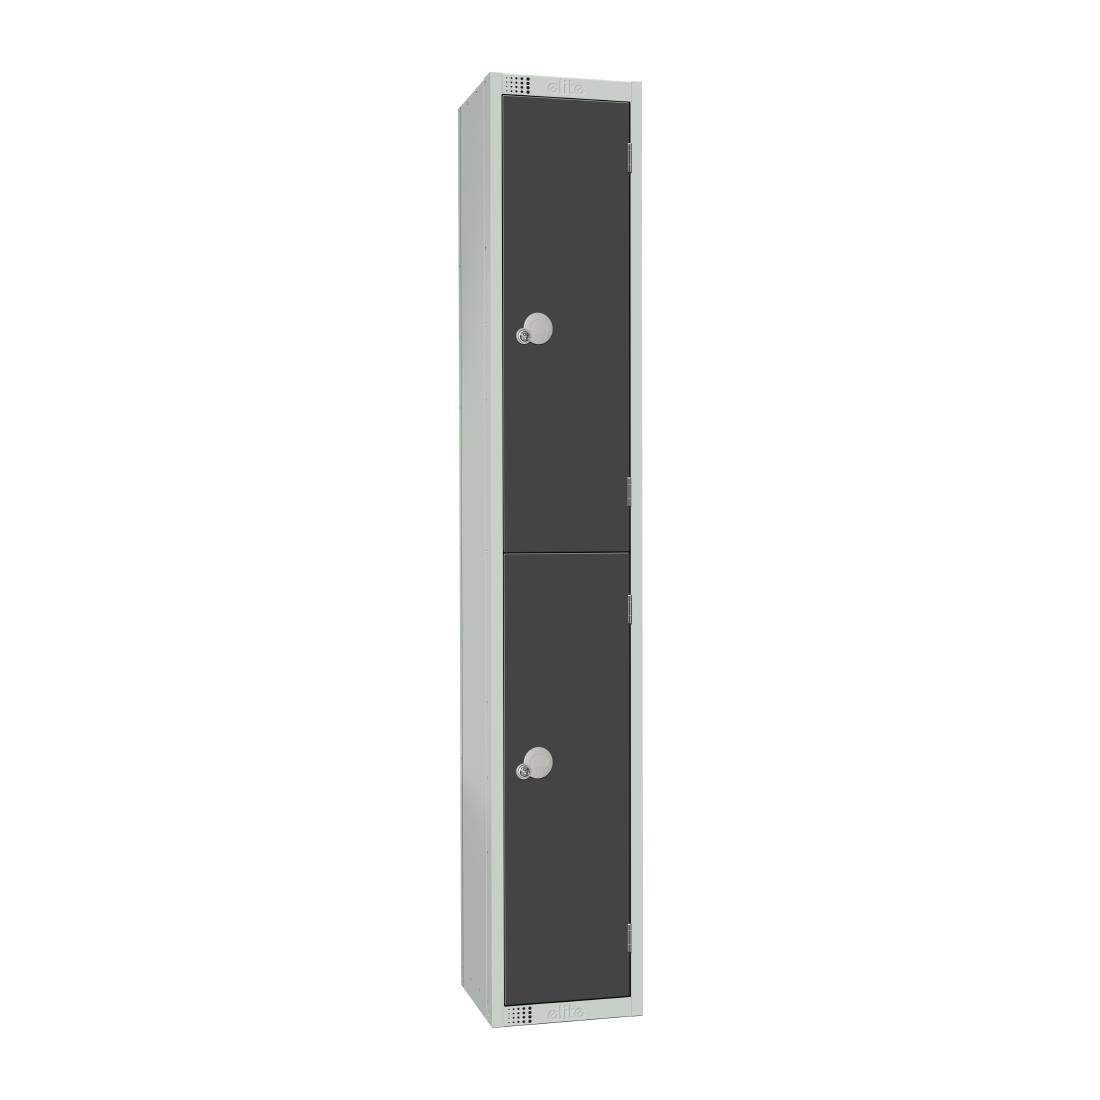 GR678-CLS Elite Double Door Manual Combination Locker Locker Graphite Grey JD Catering Equipment Solutions Ltd